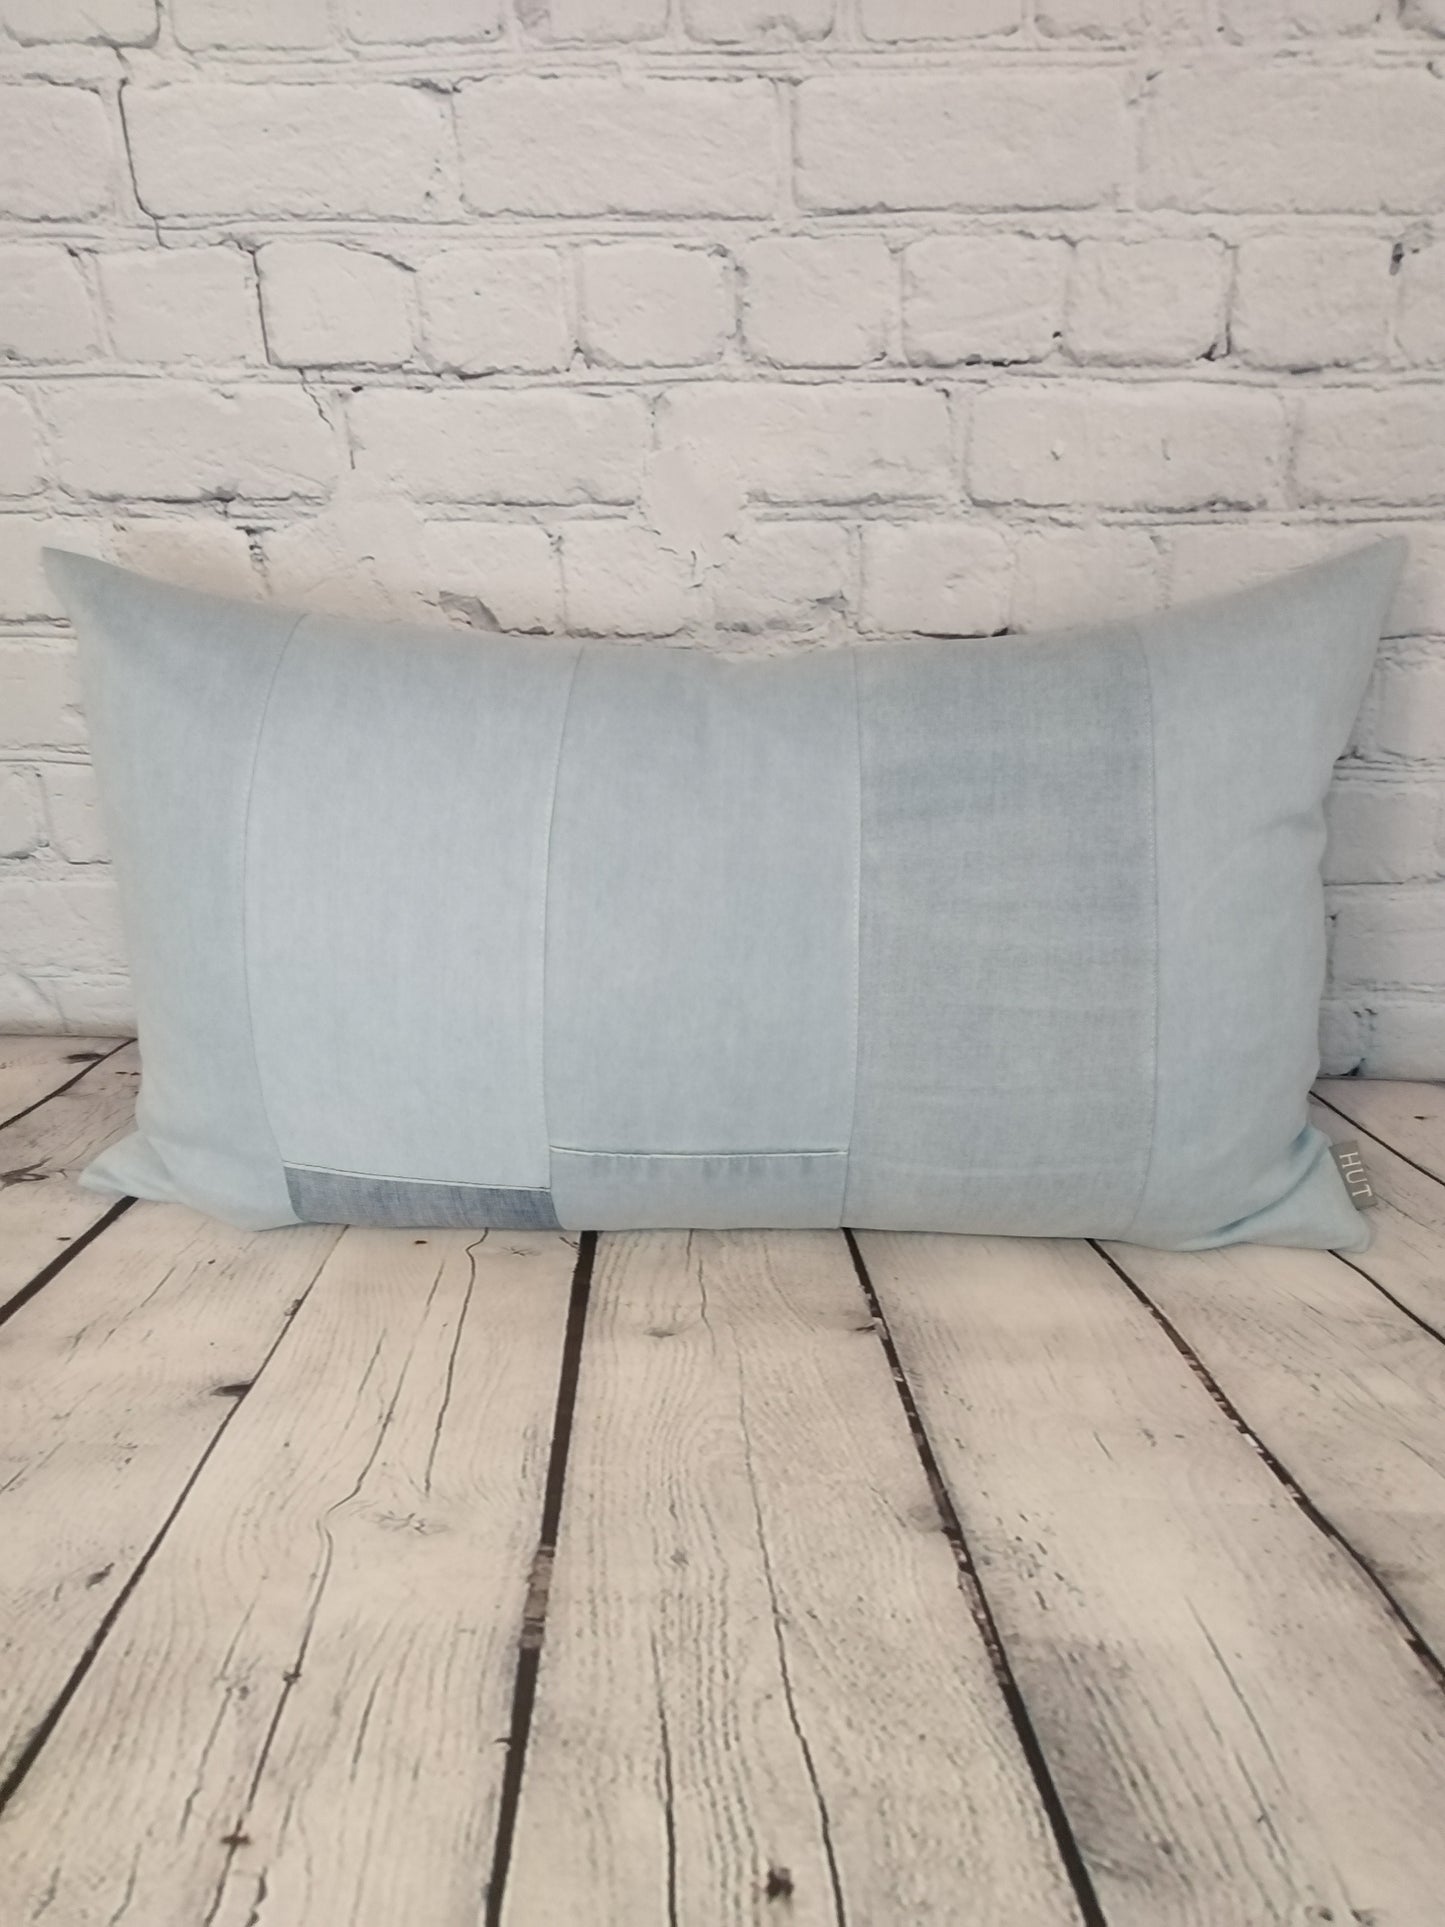 Light denim handmade patchwork bolster cushion, inique home decor.